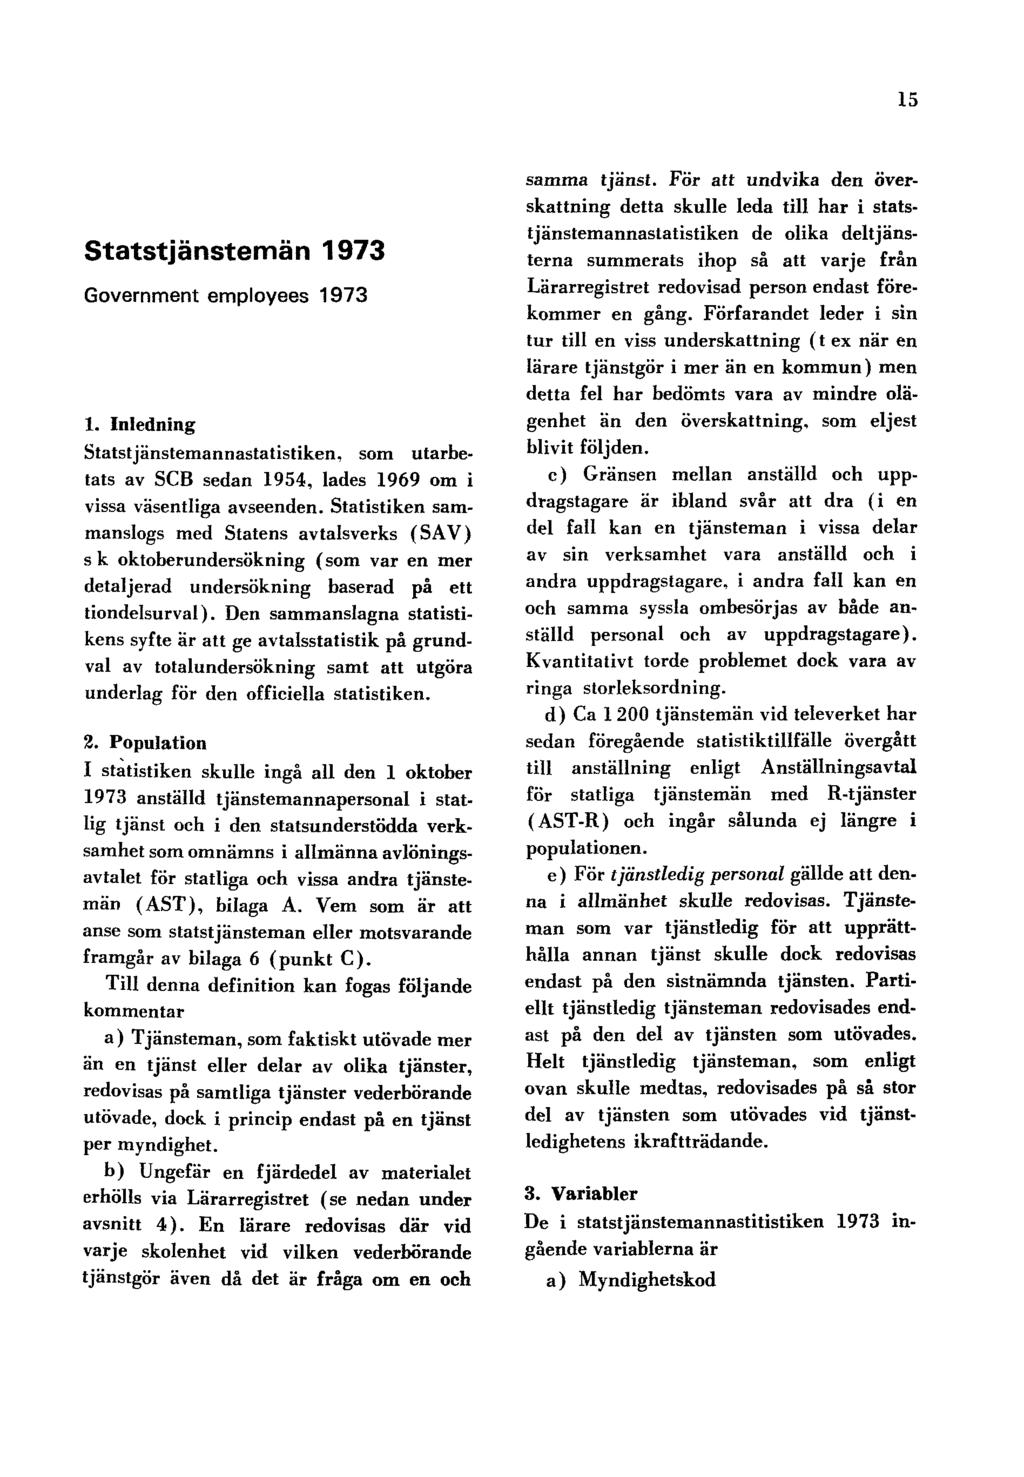 15 Statstjänstemän 1973 Government employees 1973 1. Inledning Statstjänstemannastatistiken, som utarbetats av SCB sedan 1954, lades 1969 om i vissa väsentliga avseenden.